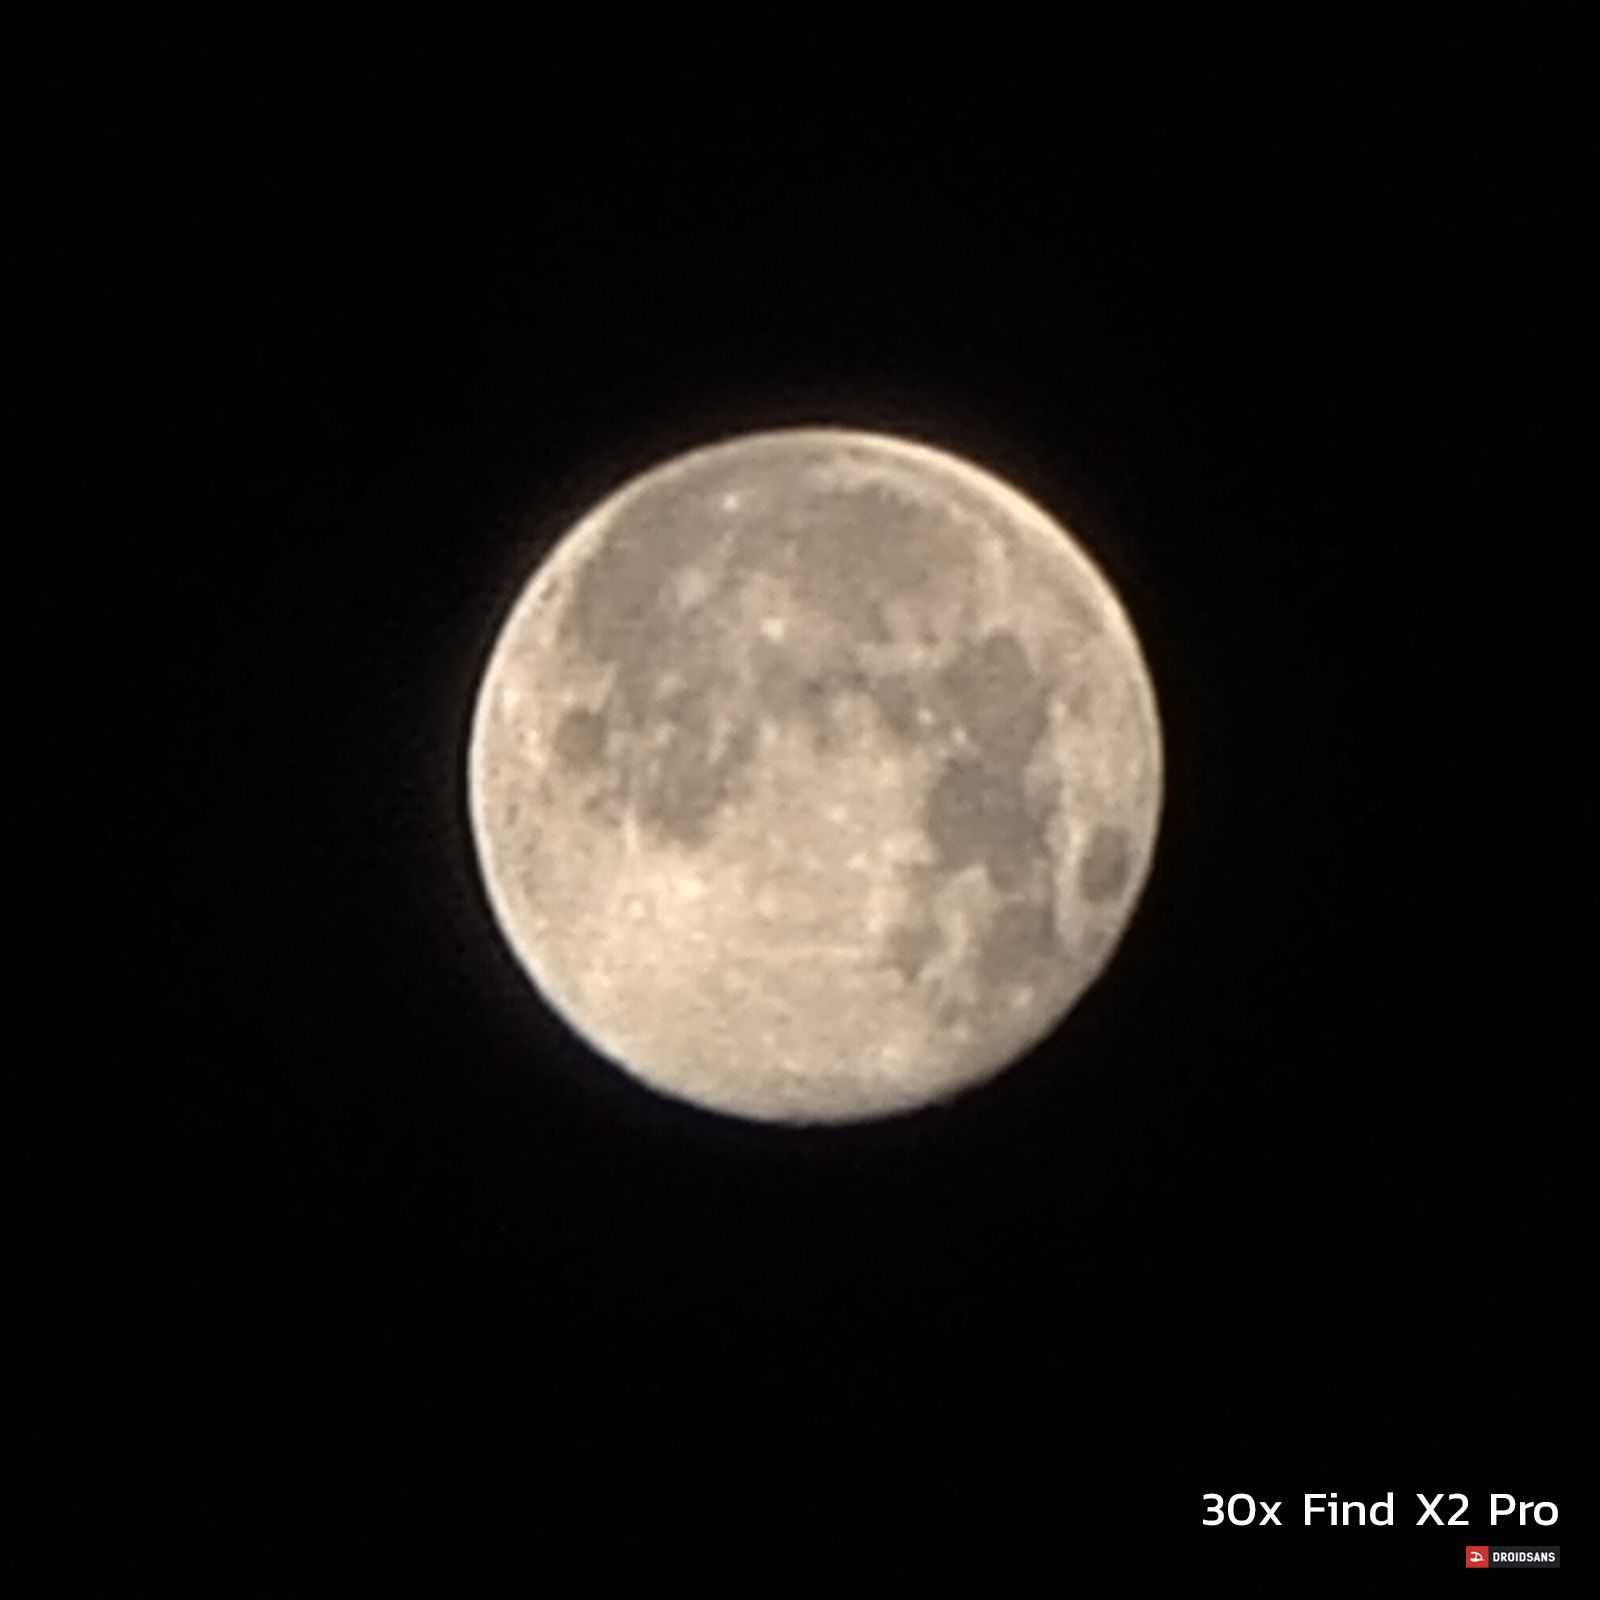 ถ่ายภาพพระจันทร์ Super Moon จาก 3 มือถือเรือธง Huawei P40 Pro, OPPO Find X2 Pro และ Galaxy S20 Ultra